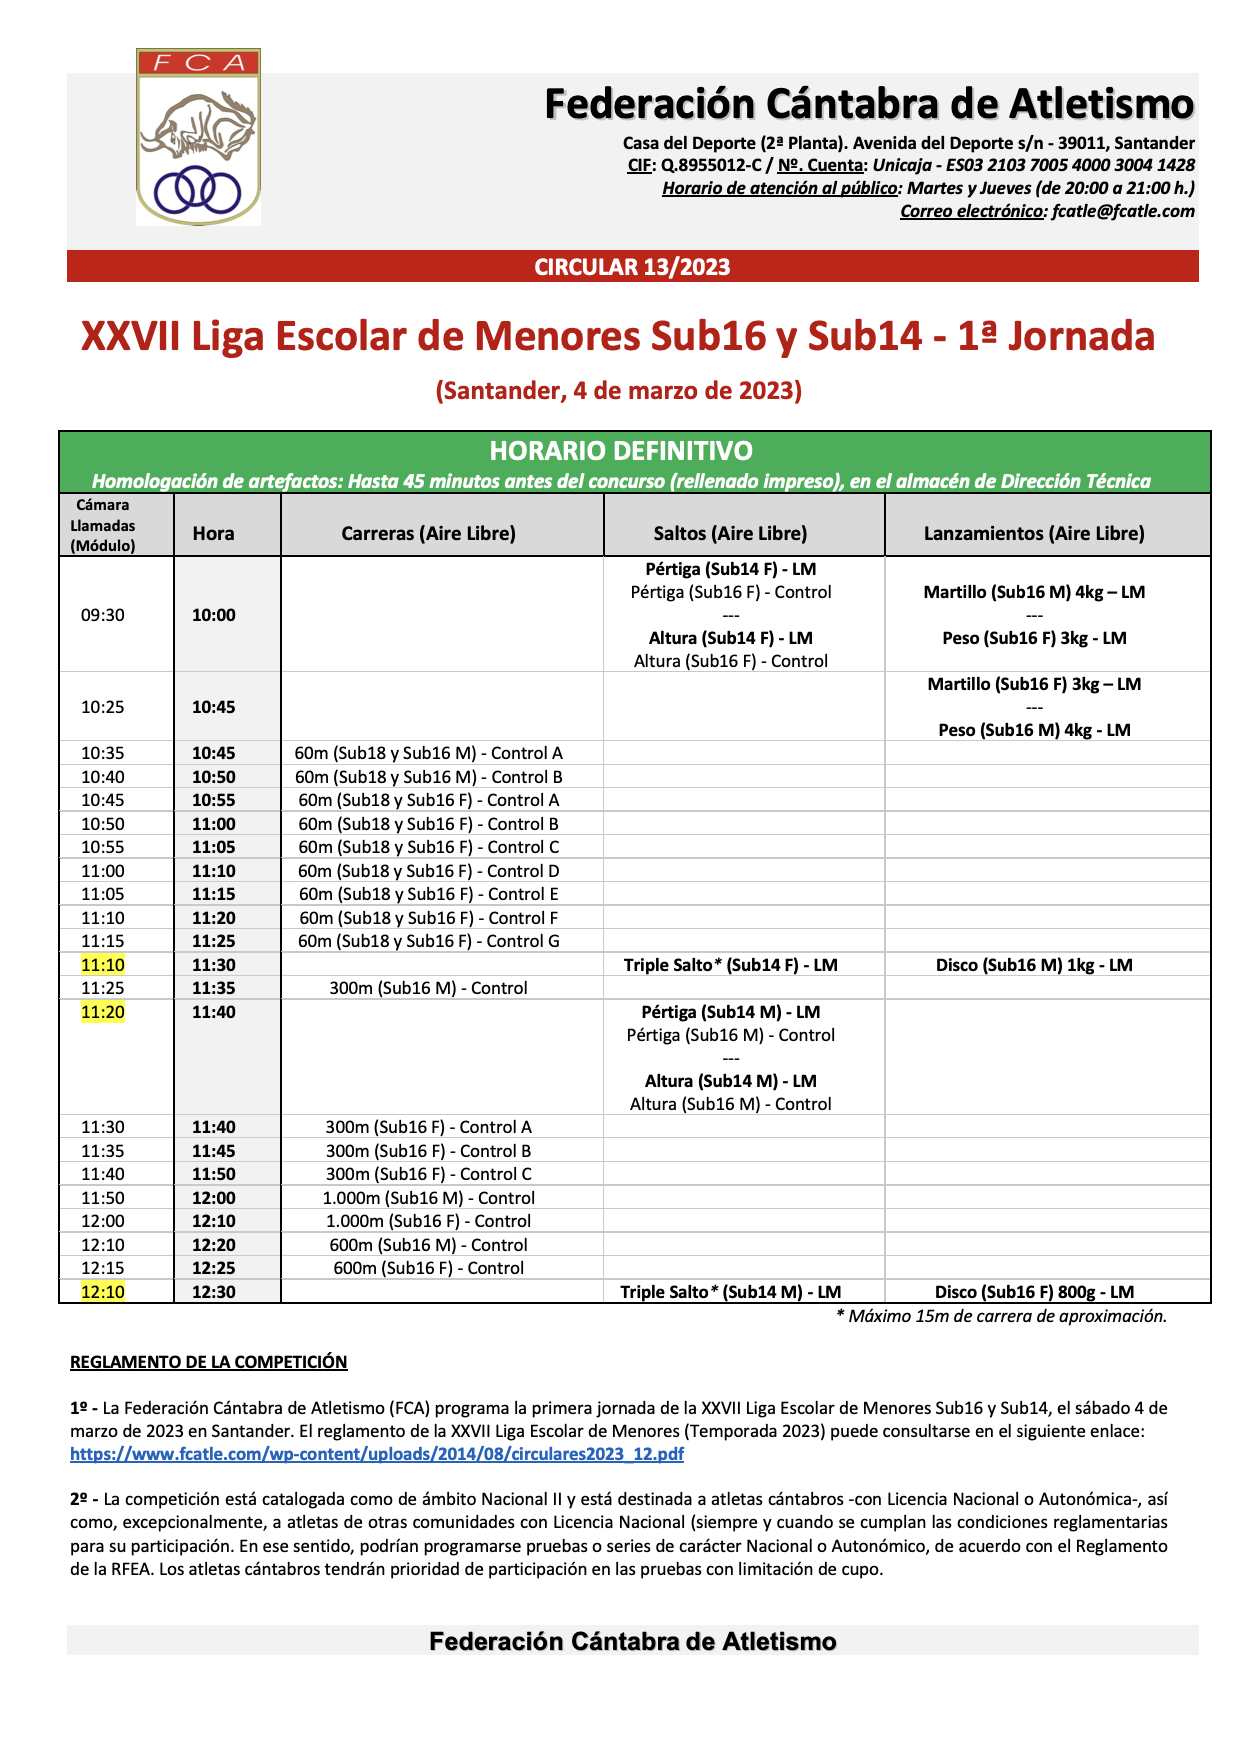 XXVII Liga Escolar de Menores Sub16 y Sub14 - 1ª Jornada @ Santander, Cantabria